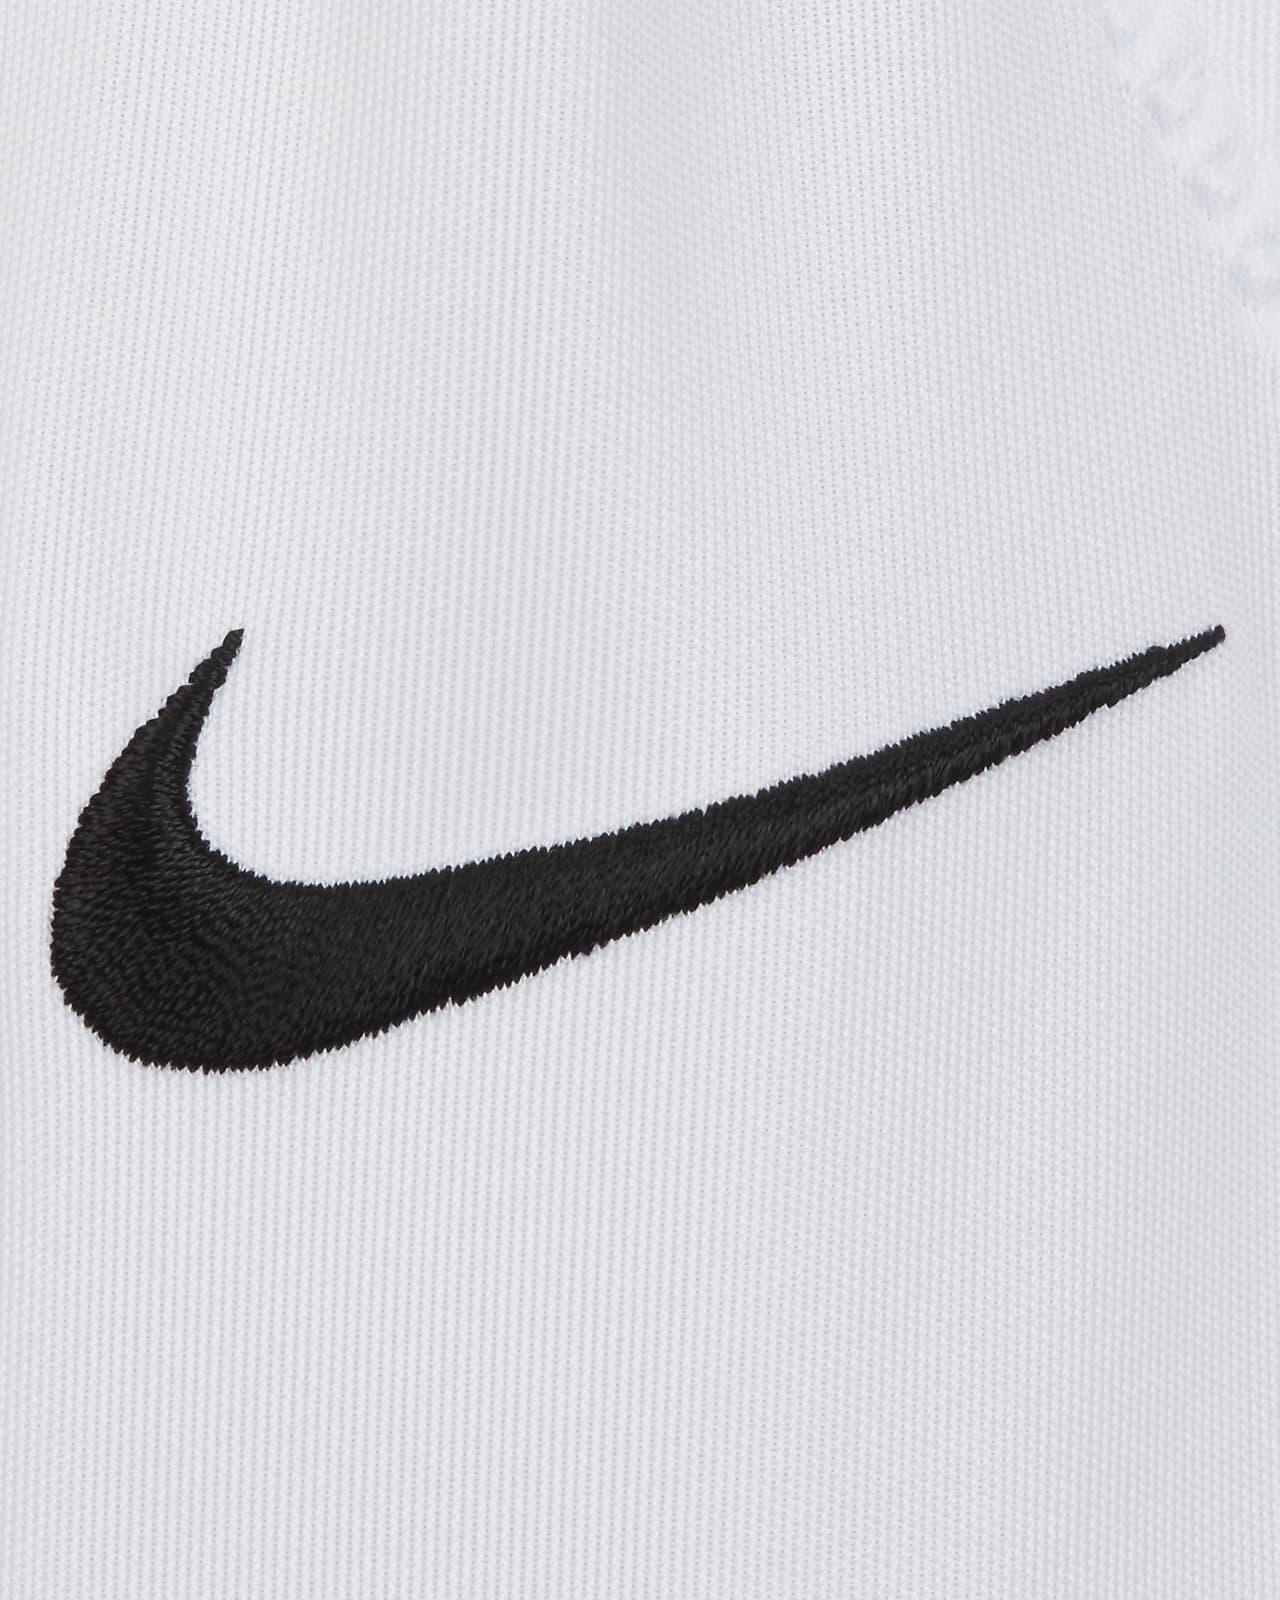 Urimelig utilsigtet hændelse hjørne Nike Recruit 3.0 Big Kids' (Boys') Football Pants. Nike.com